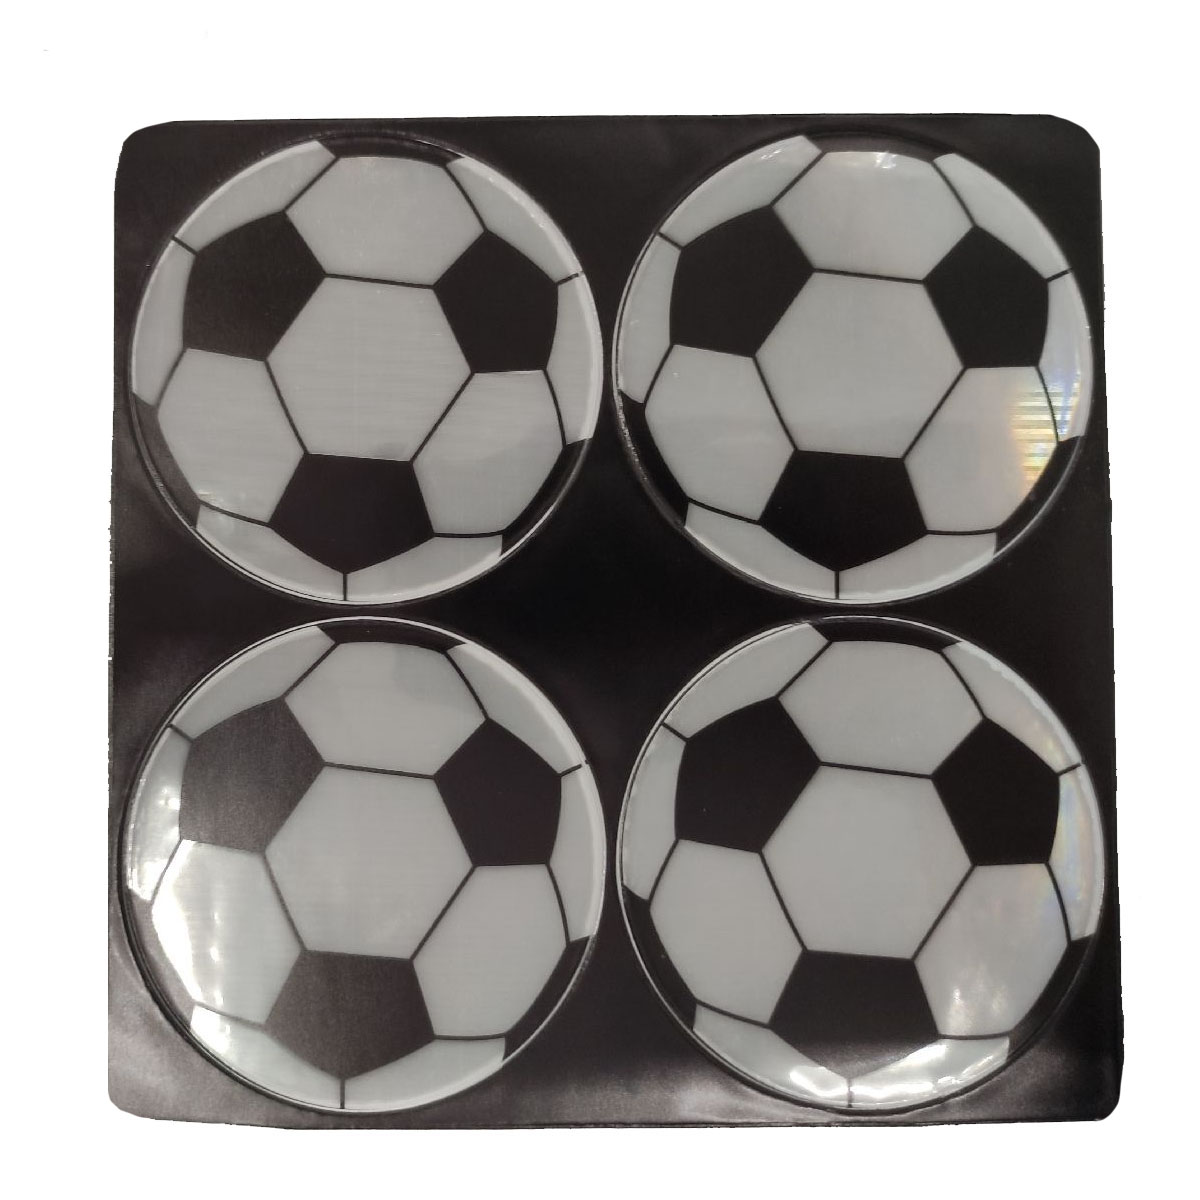 Наклейки светоотражающие, диаметр 65 мм, рисунок Футбольный мяч (комплект 4 шт.)